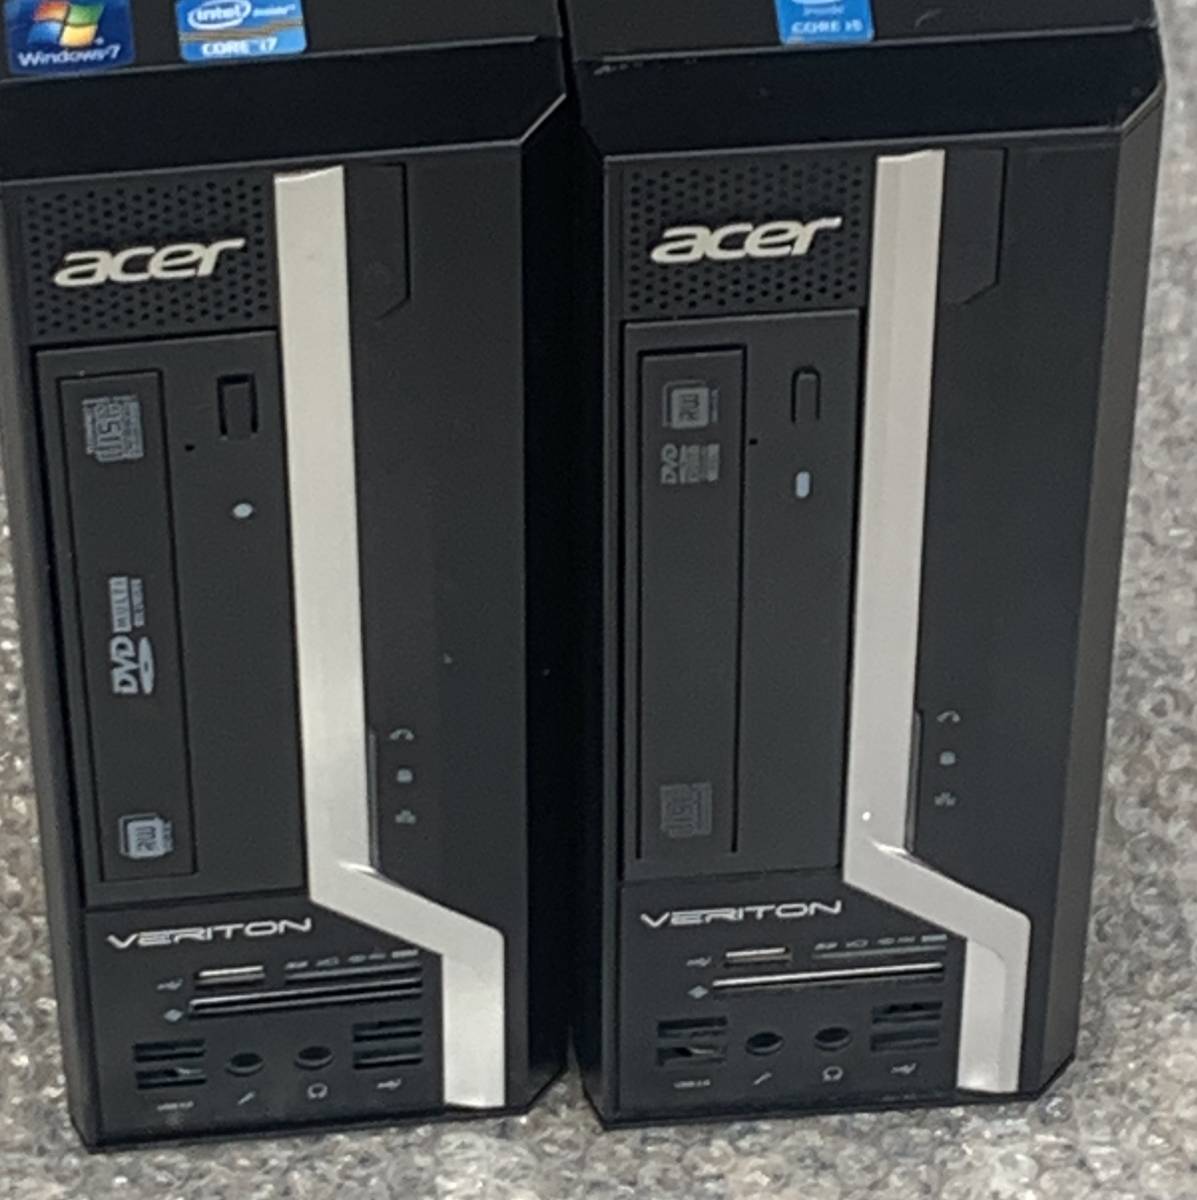 【中古/部品用/USB部品無】Acer ベアボーン状態PC 2台セット Veriton X4620G X4630G / CPUなし 4GB・2枚 500GB HDD 1台 DVD・電源あり_画像4